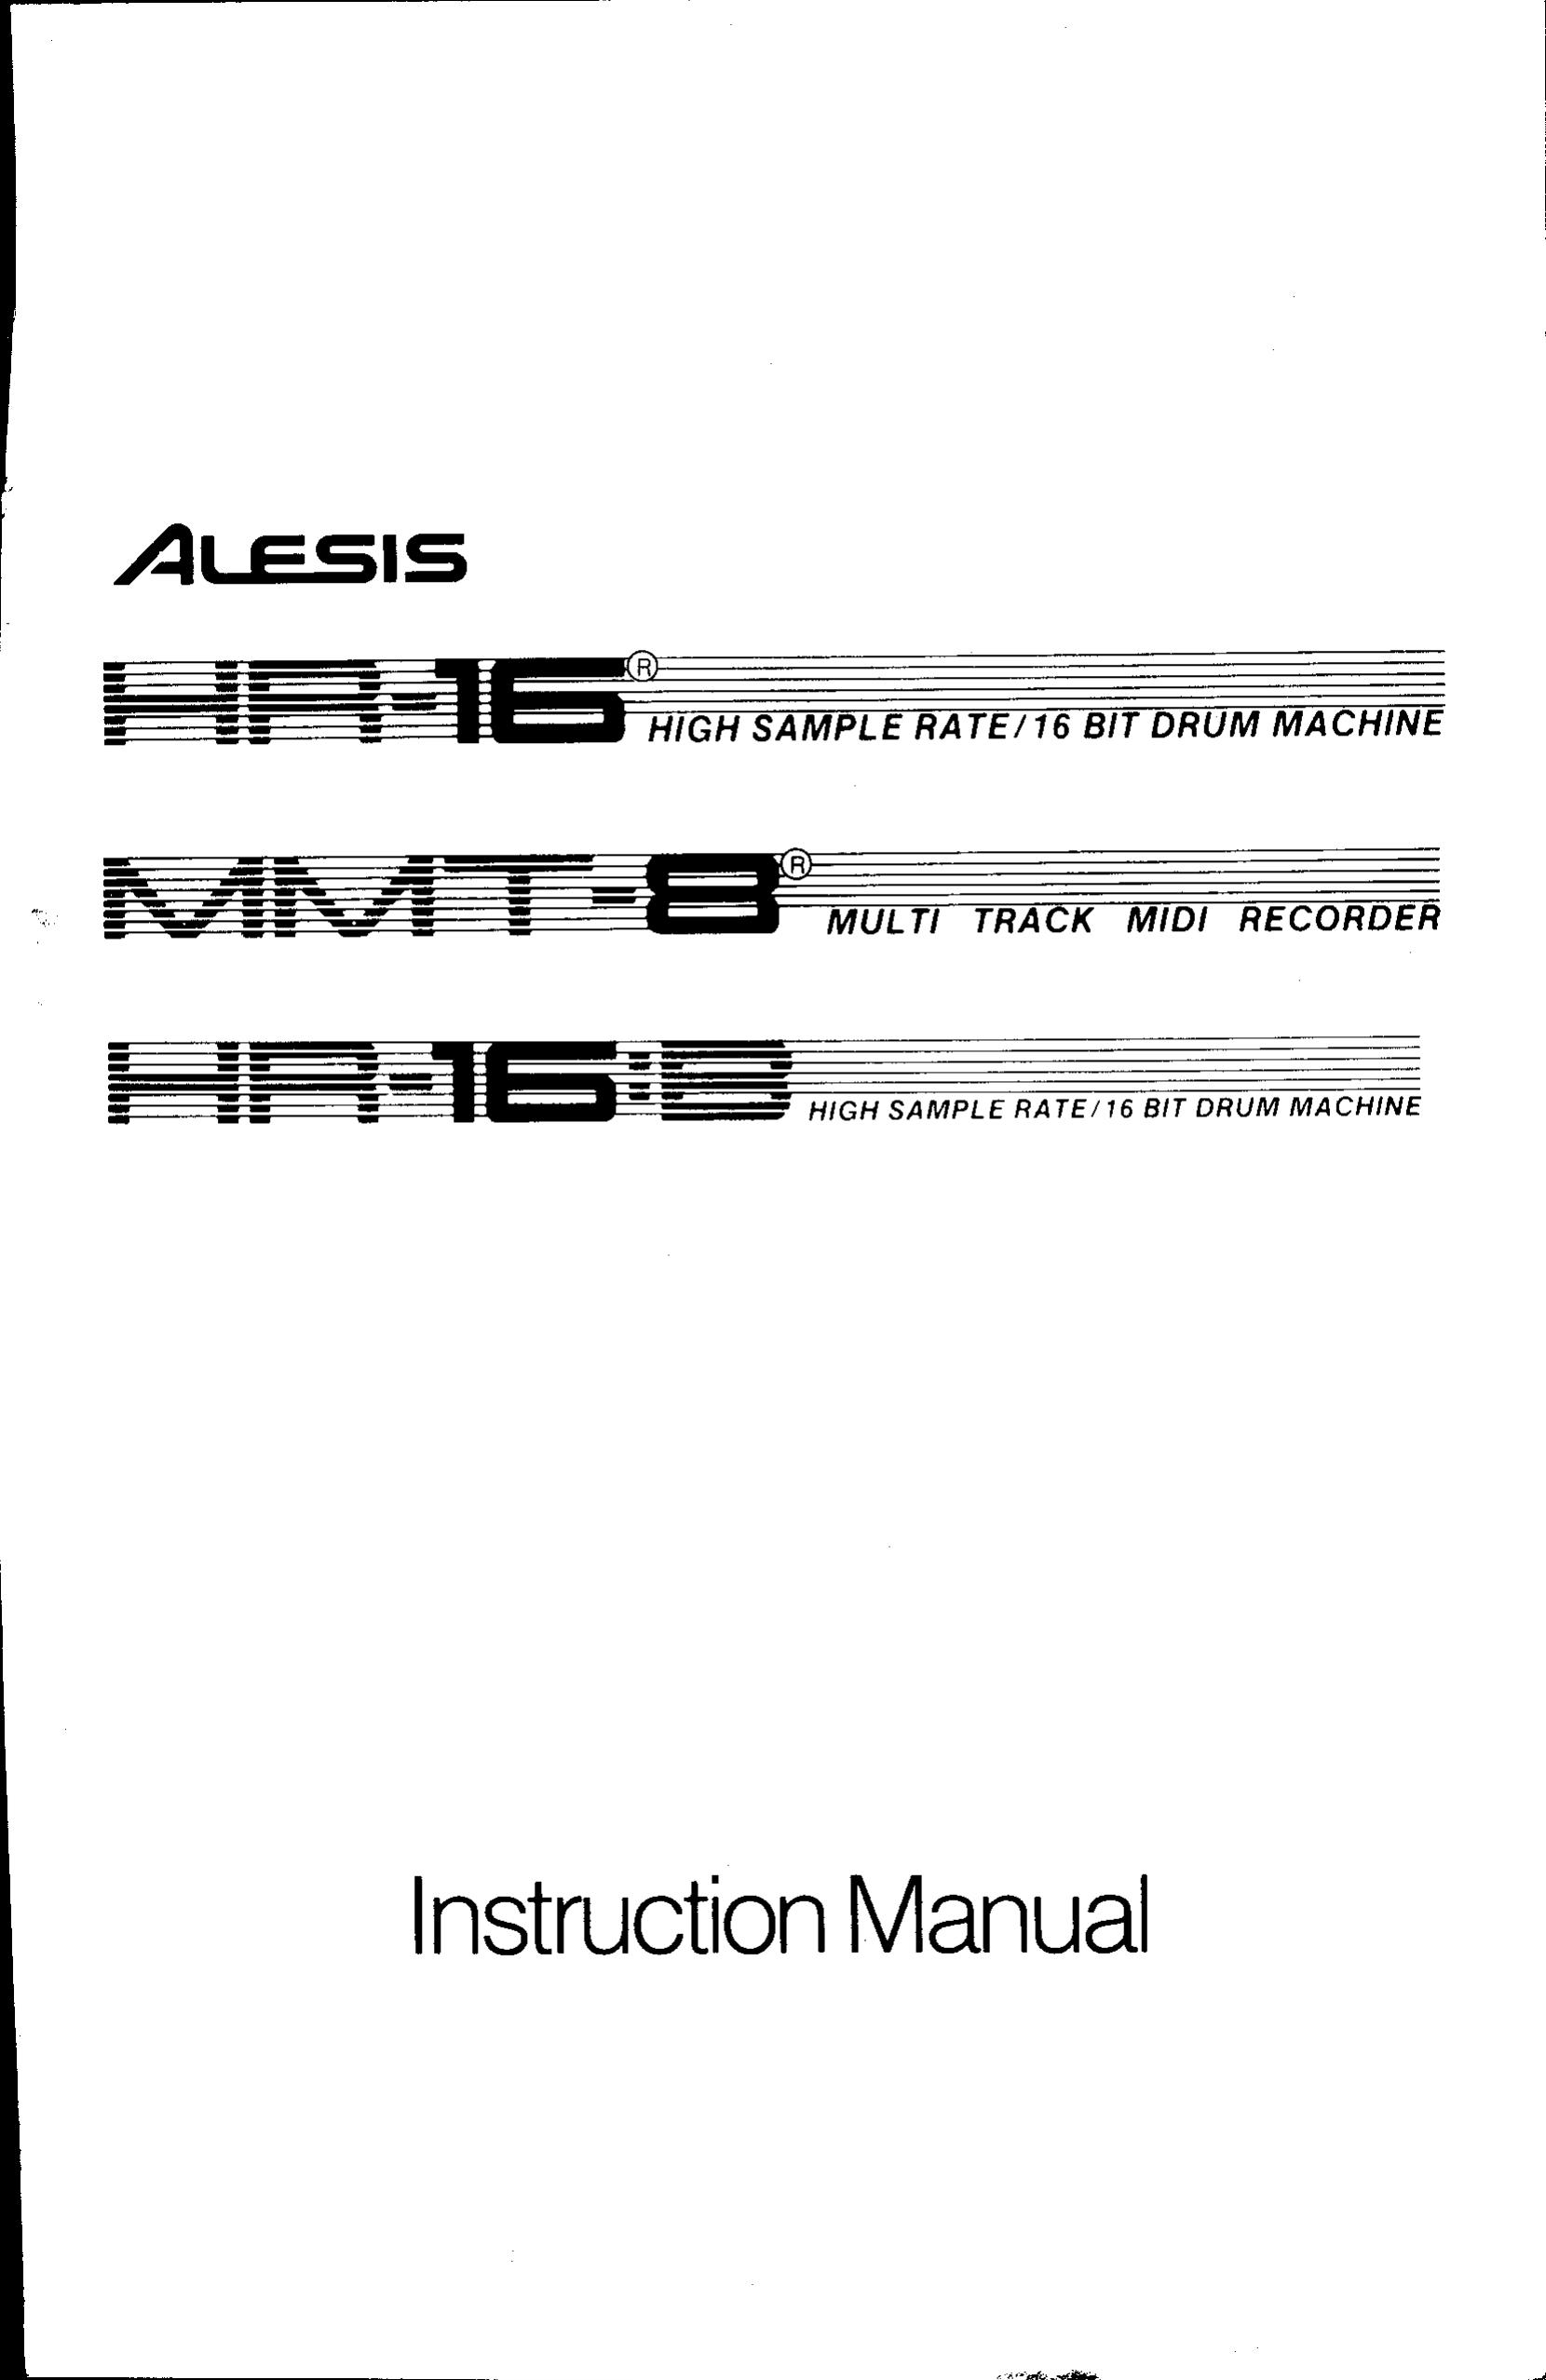 Alesis HR-16 Drums User Manual (Page 1)